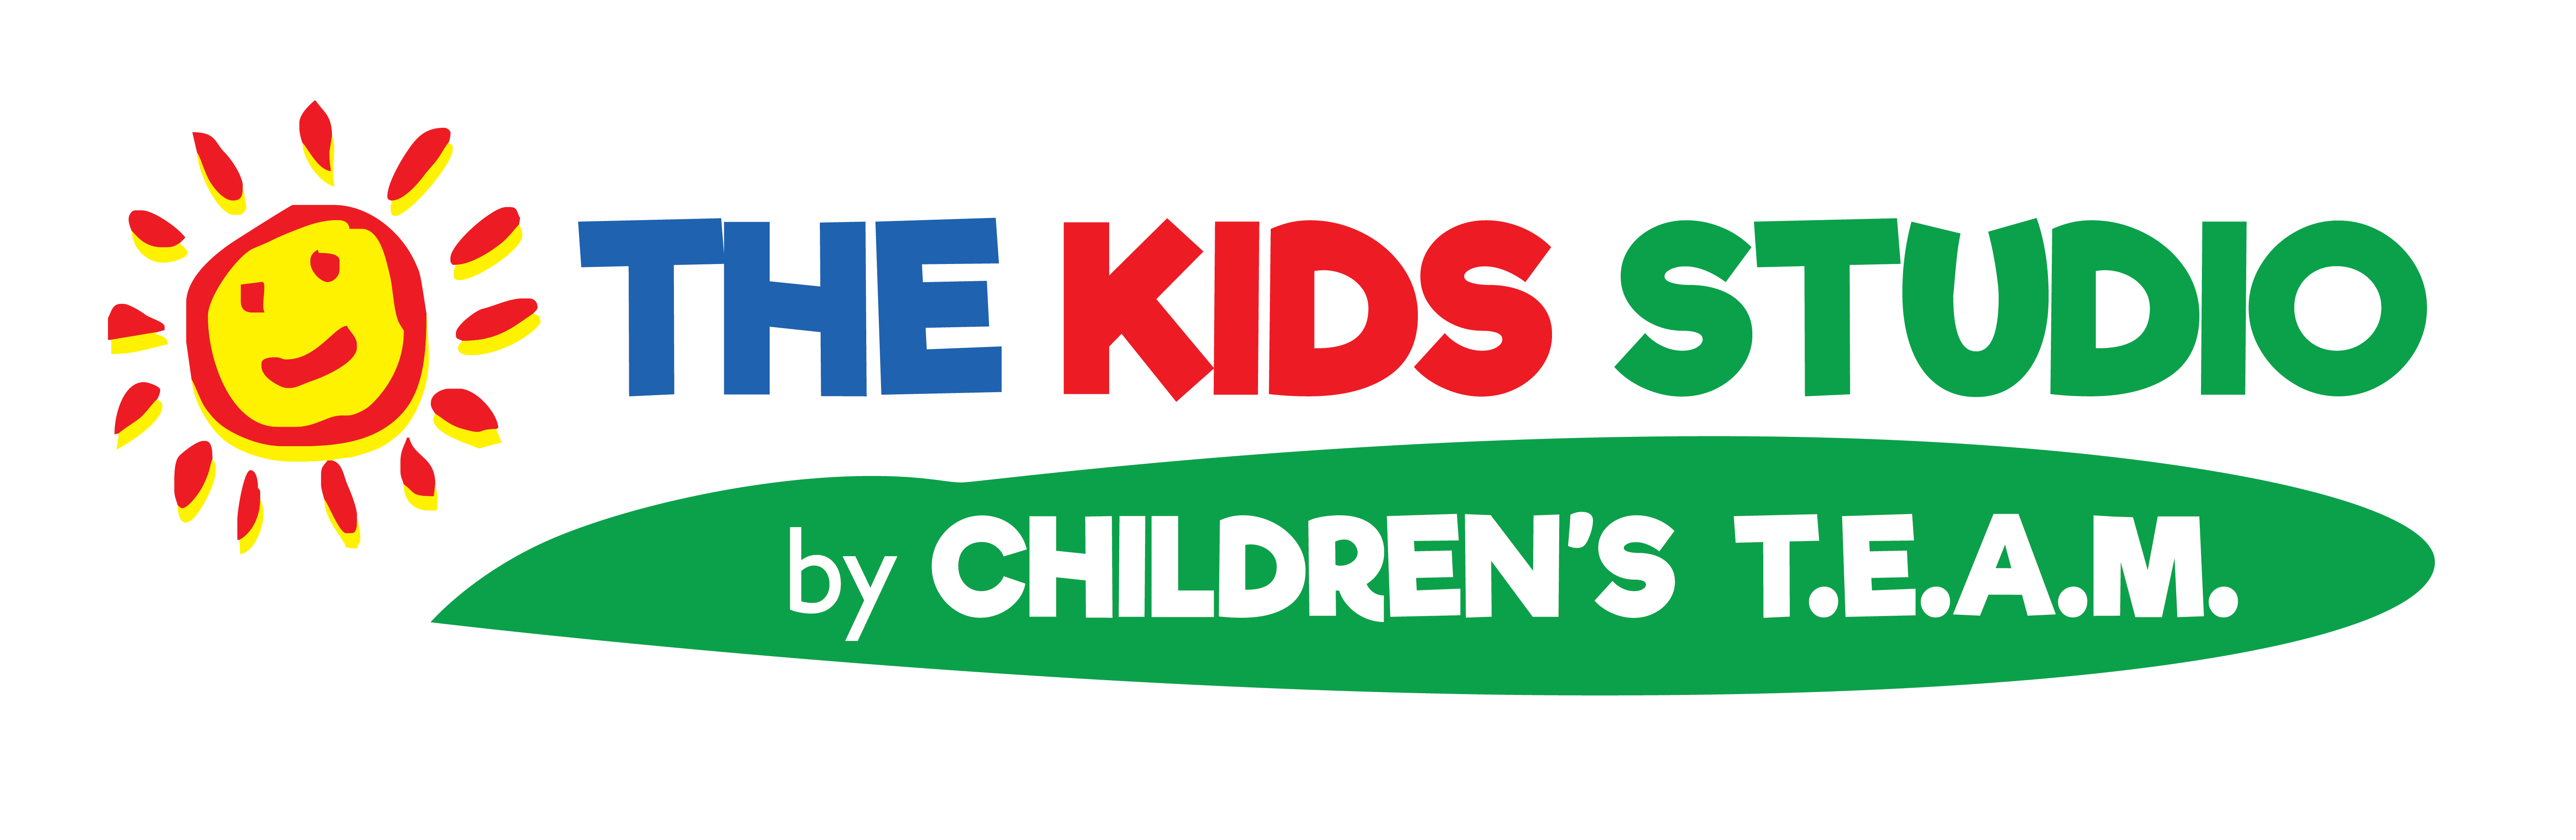 The Kids Studio by Children's T.E.A.M.